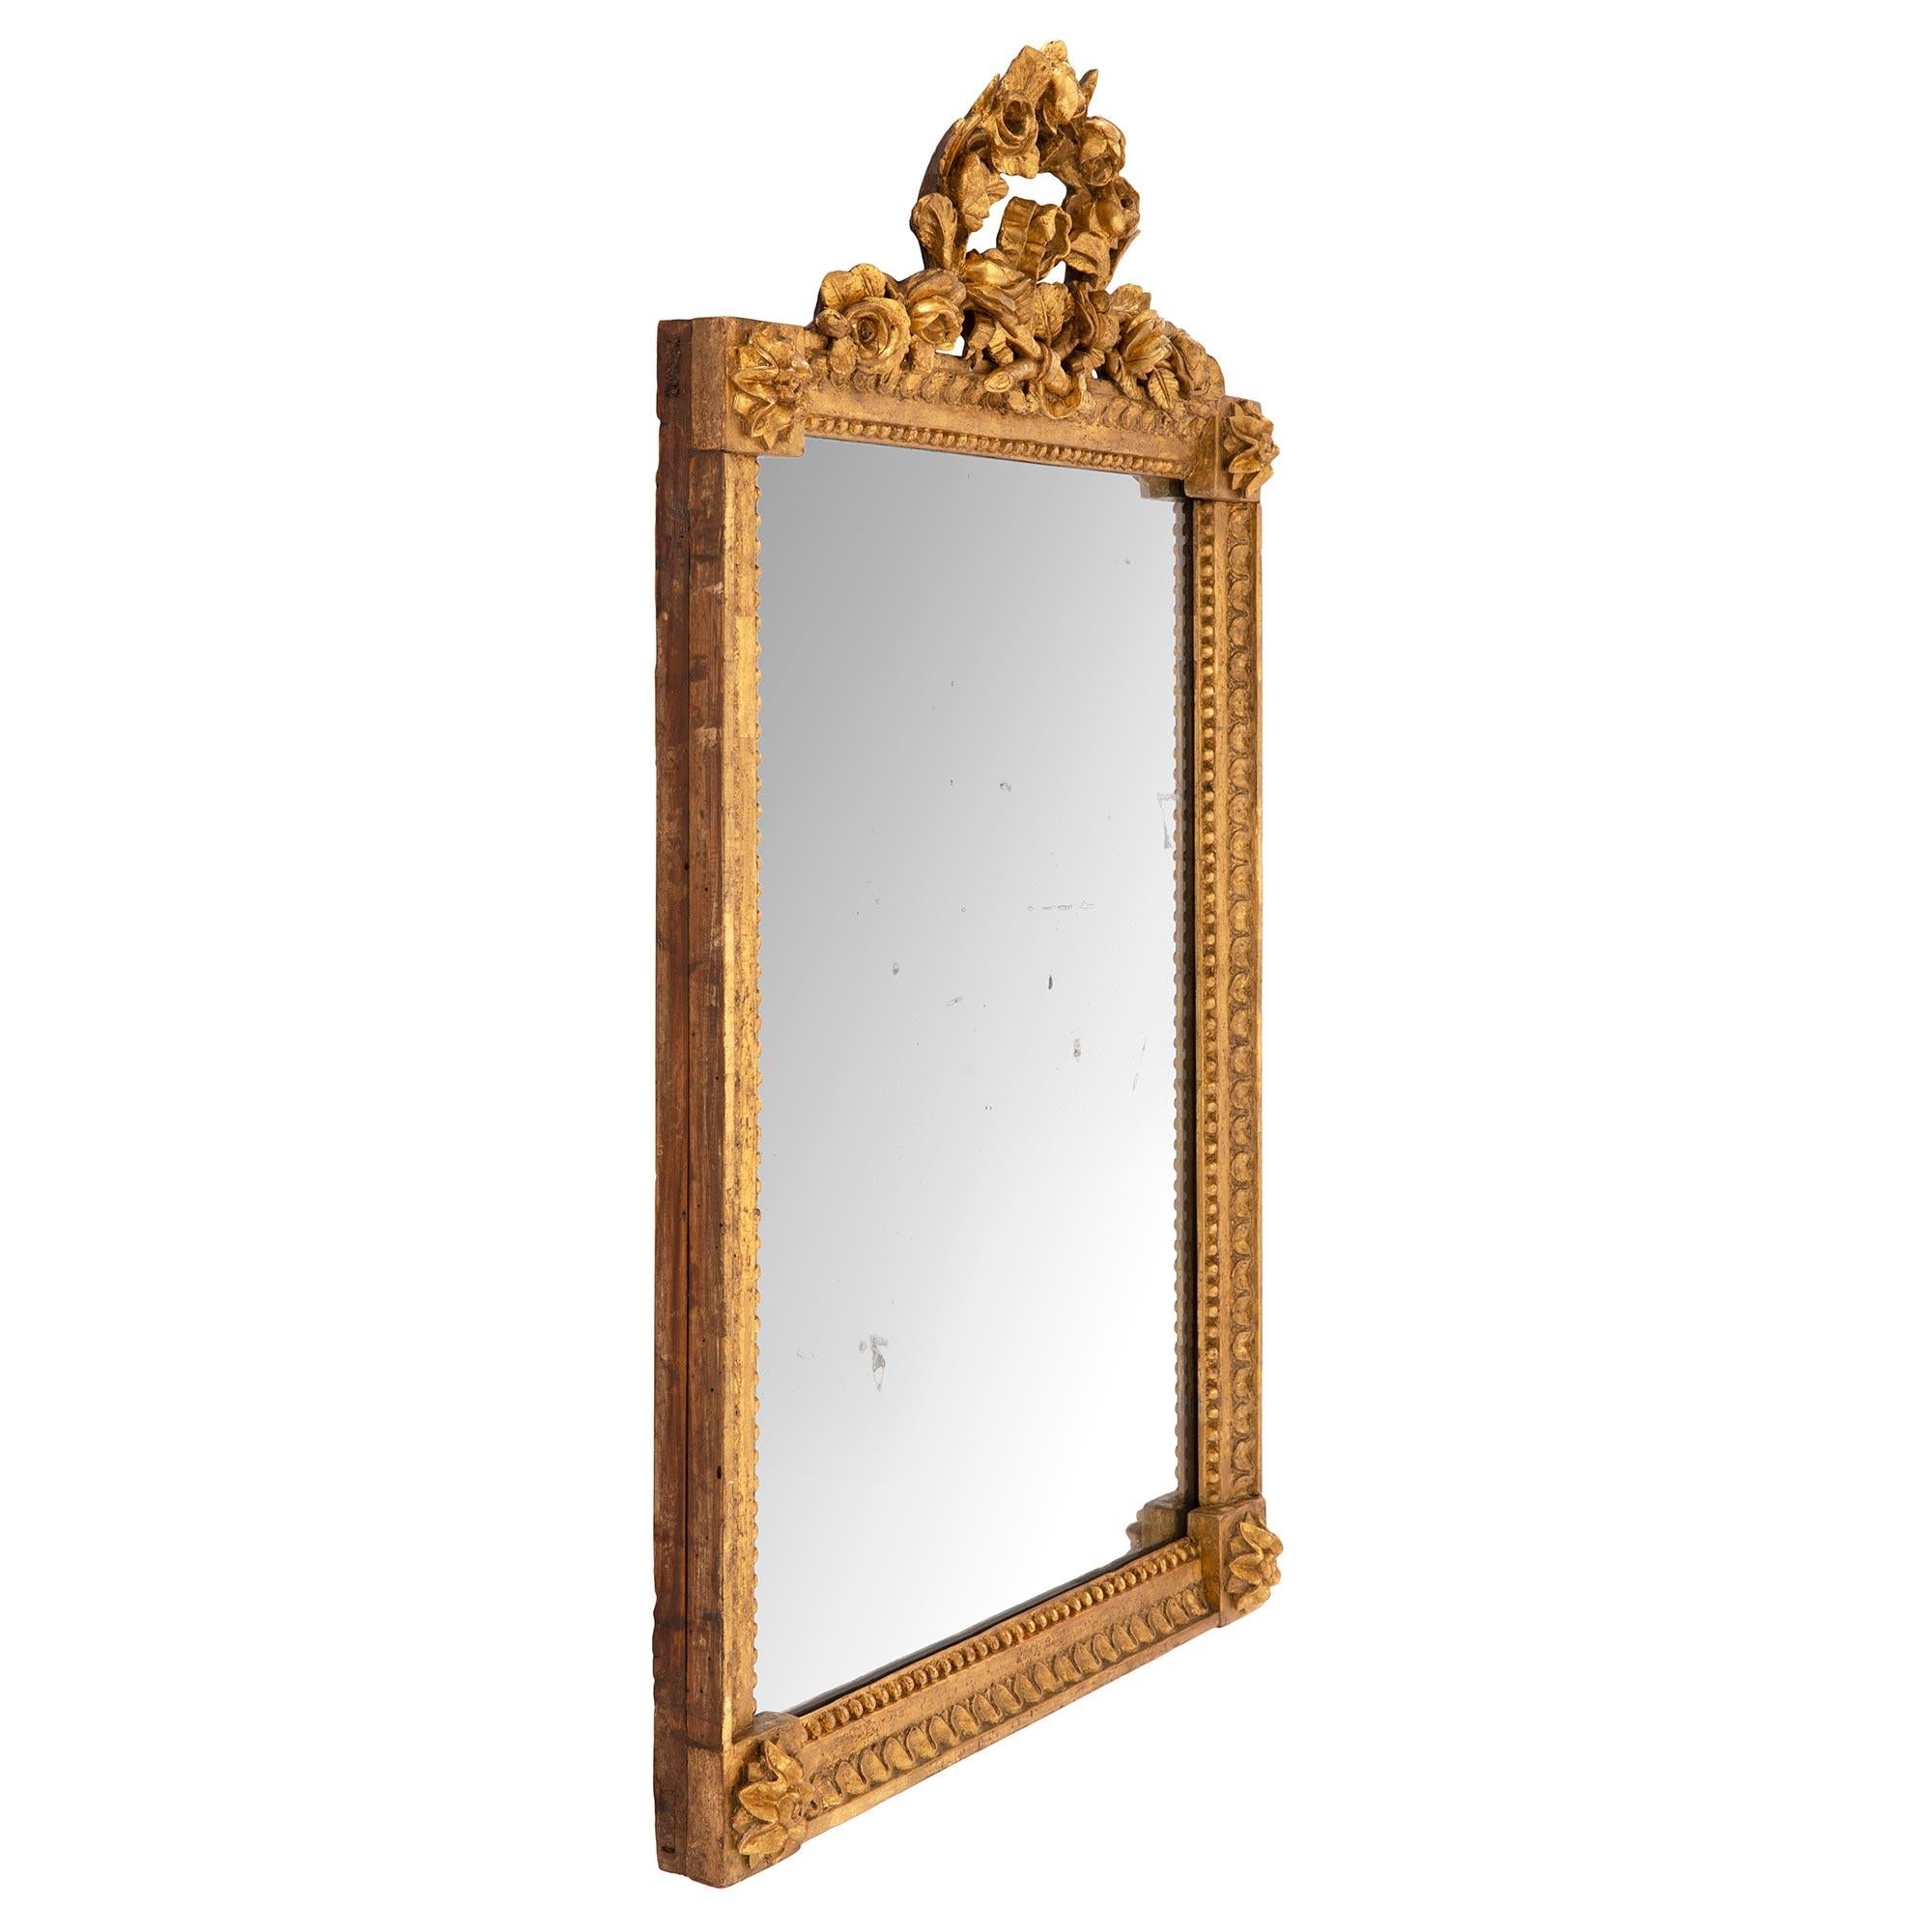 Eine charmante Französisch 19. Jahrhundert Louis XVI st. Vergoldung Spiegel. Der Spiegel behält seine ursprüngliche Spiegelplatte in einem geraden Rahmen mit einem schönen Perlen- und Blattwerkband und zarten Blockrosetten an jeder Ecke. Die schöne